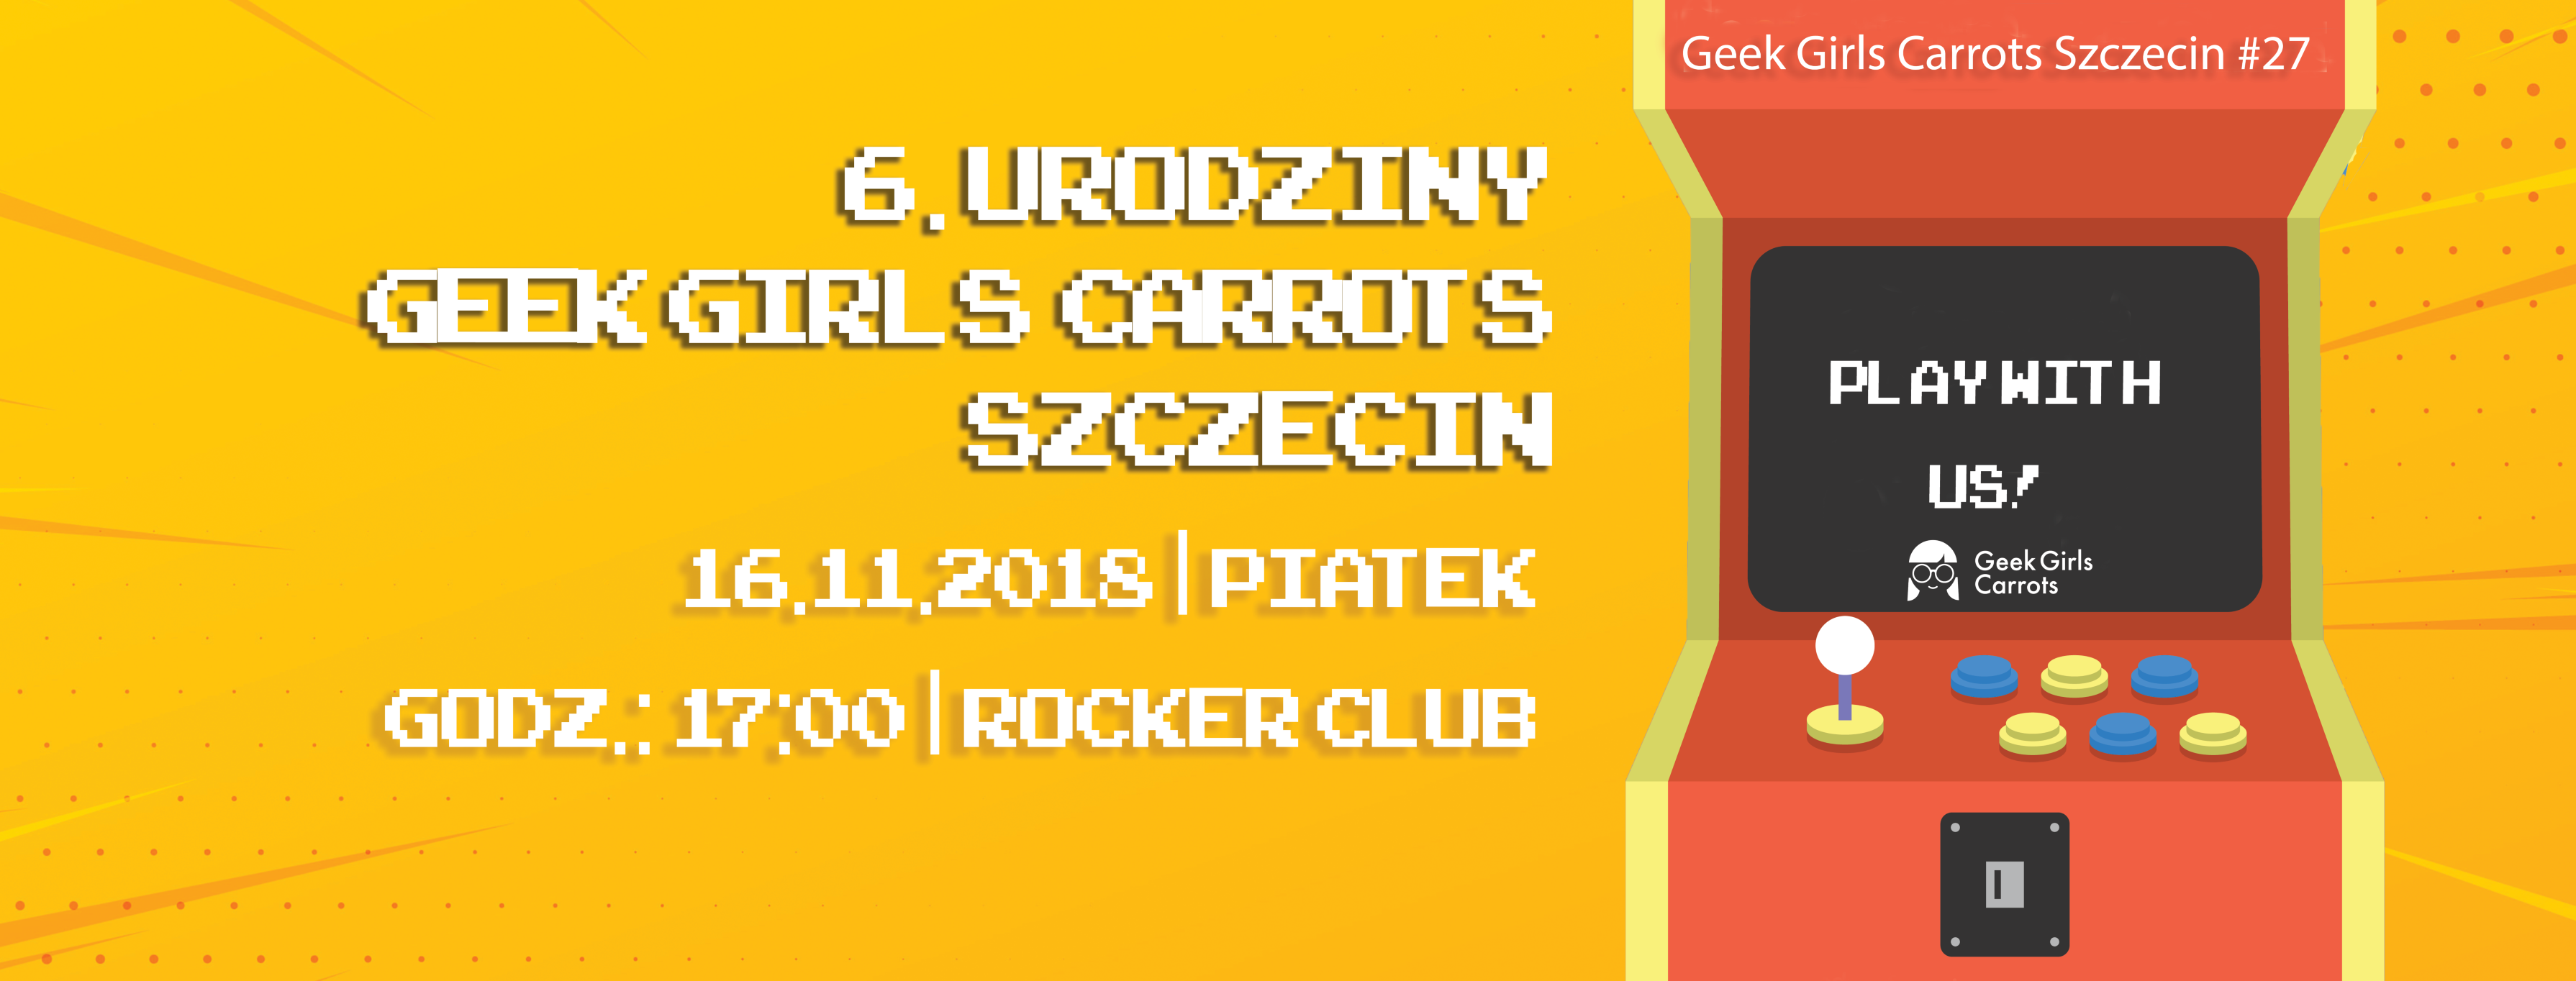 6-urodziny-geek-girls-carrots-szczecin-27-play-with-us2